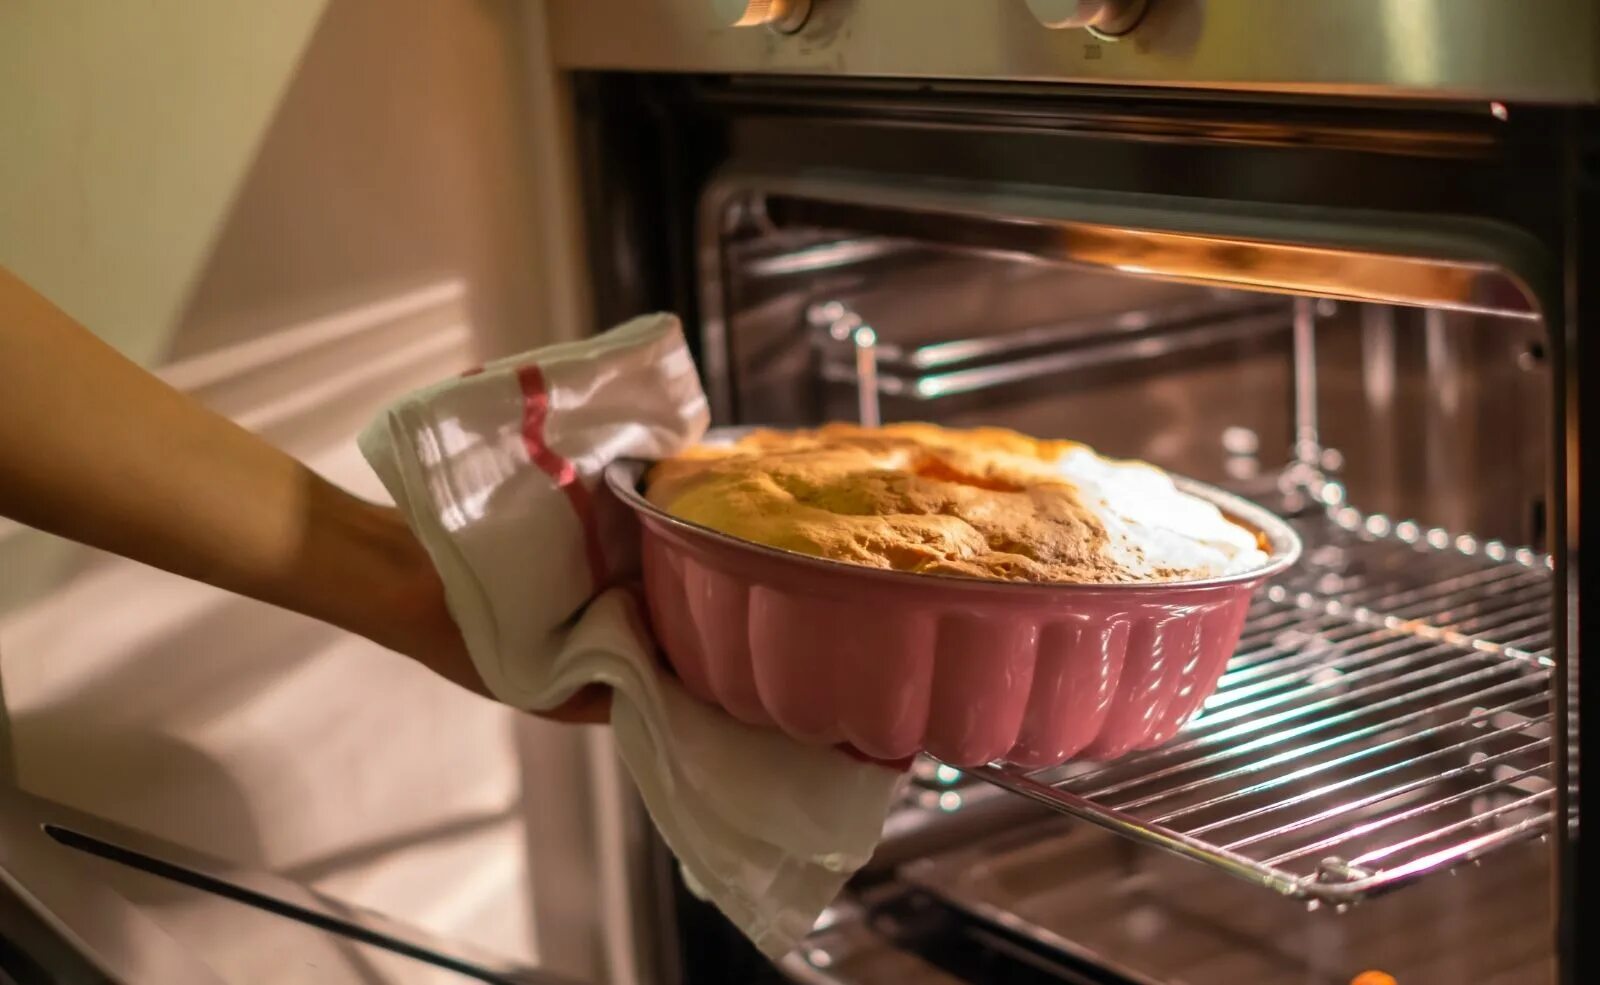 Baking Oven. Выпекание в духовке красители. Oven Baked. Духовка которая печет пироги и торта.